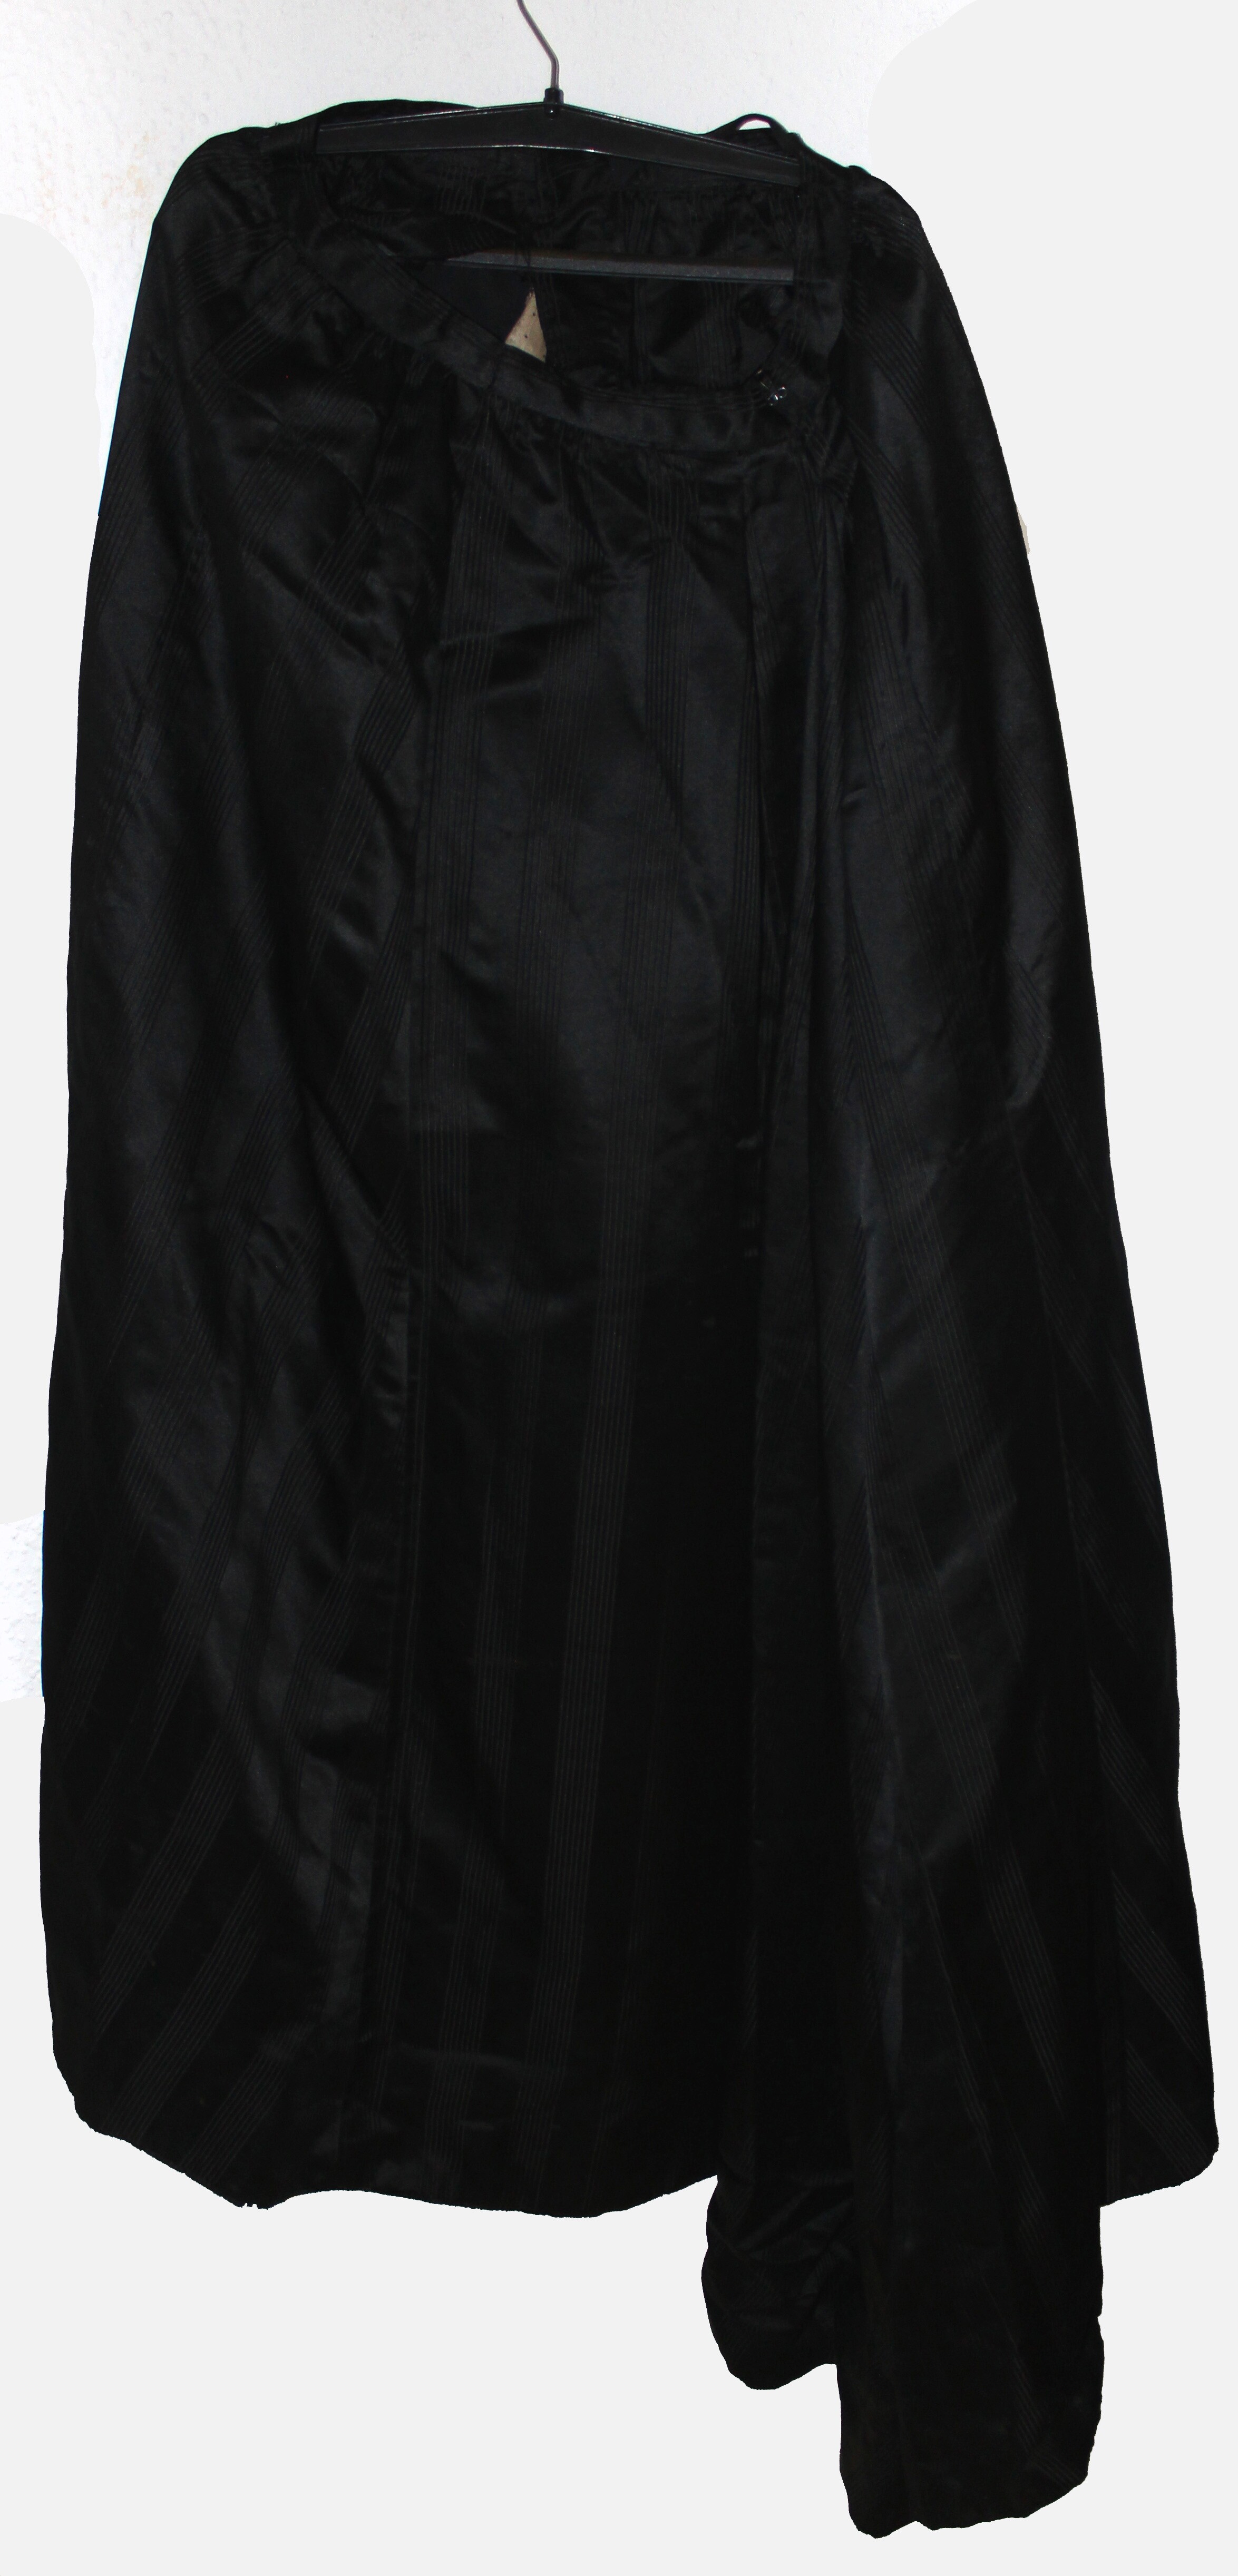 schwarzes Frauenkleid (Museum Wolmirstedt RR-F)